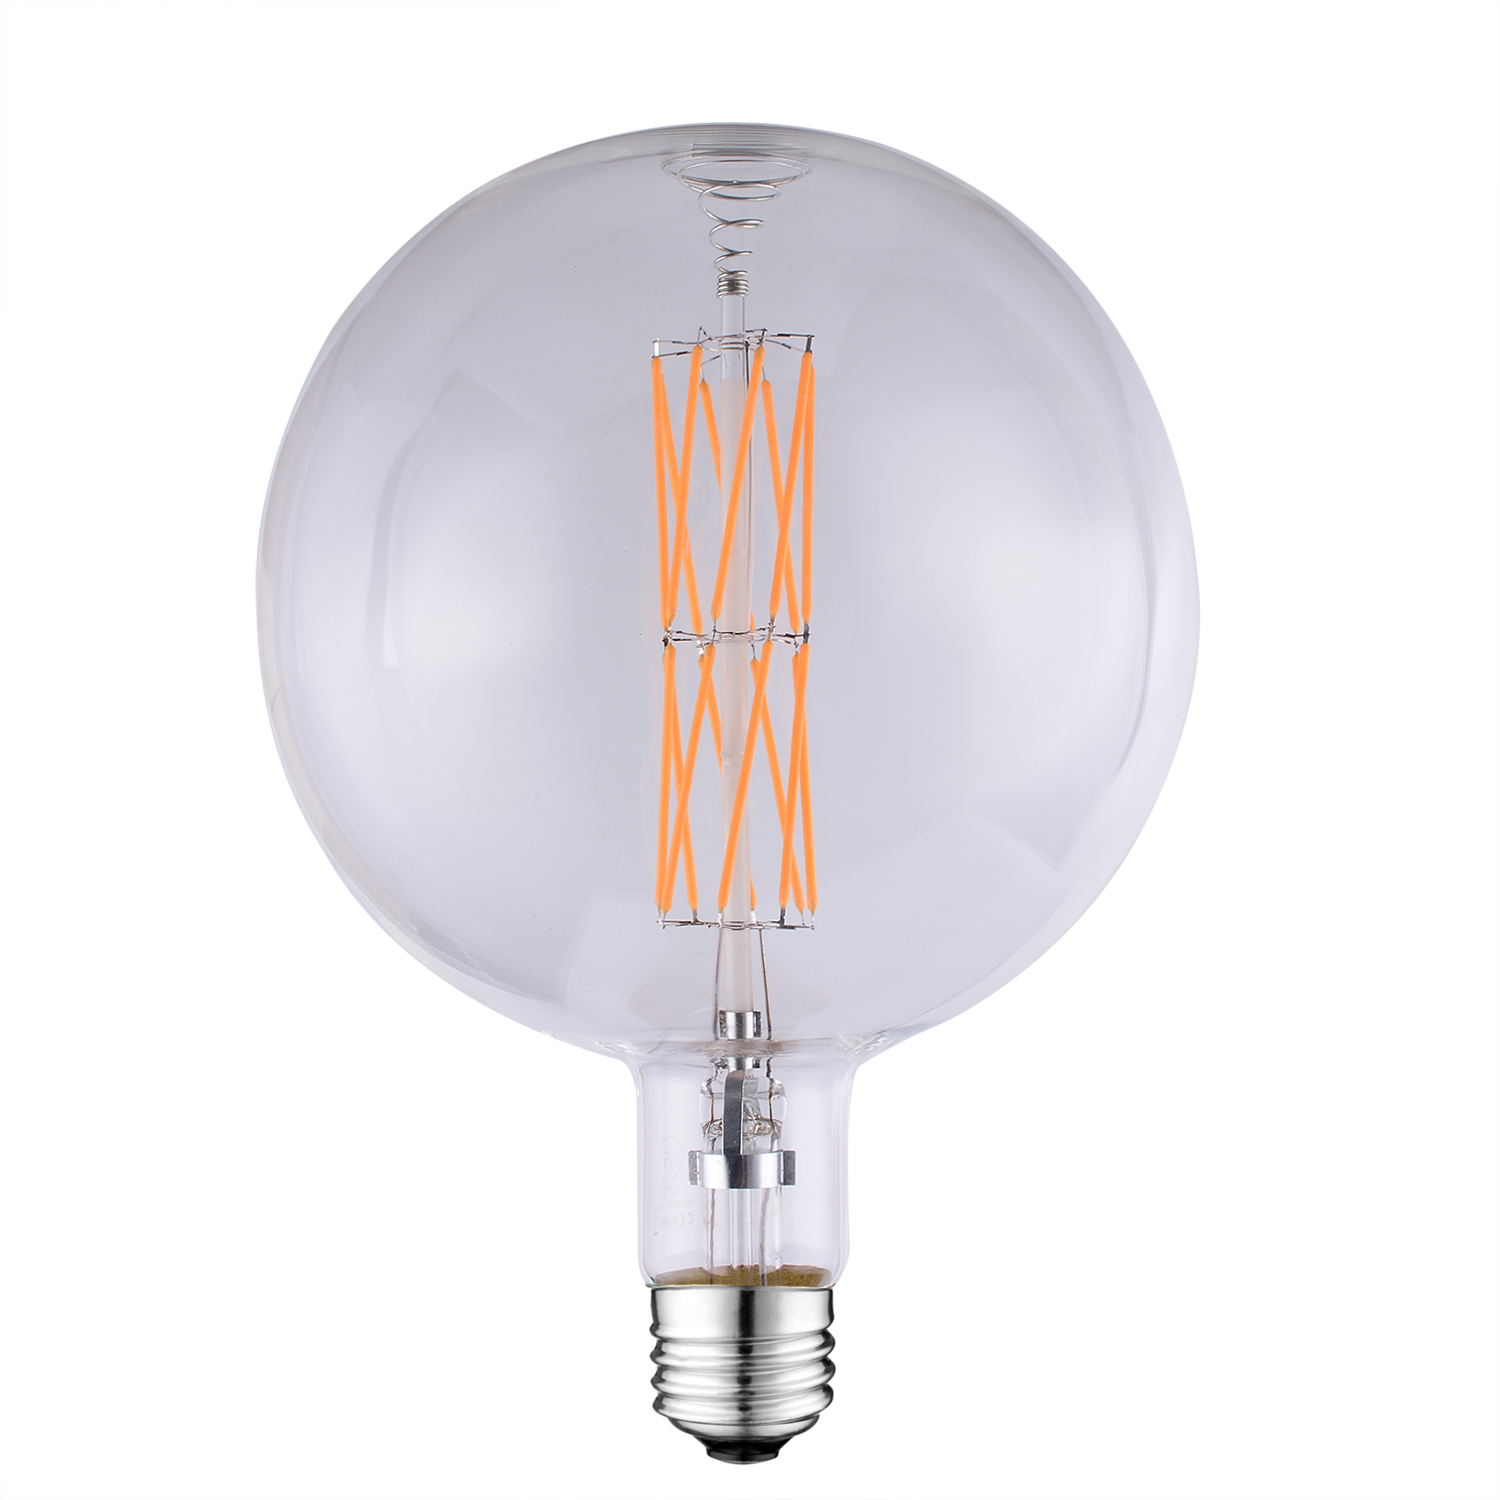 G180 LED Filament large globe light bulbs